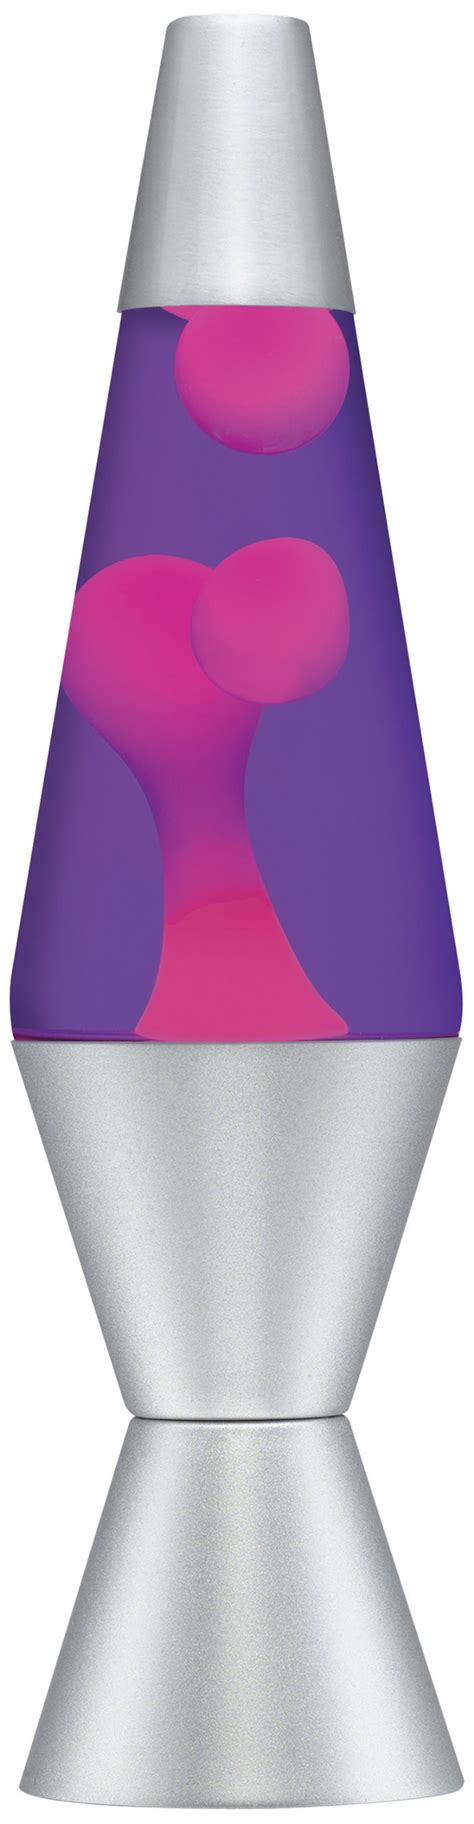 lava lamp 14 5 purple pink aluminium 14 5 inch buy online in united arab emirates at